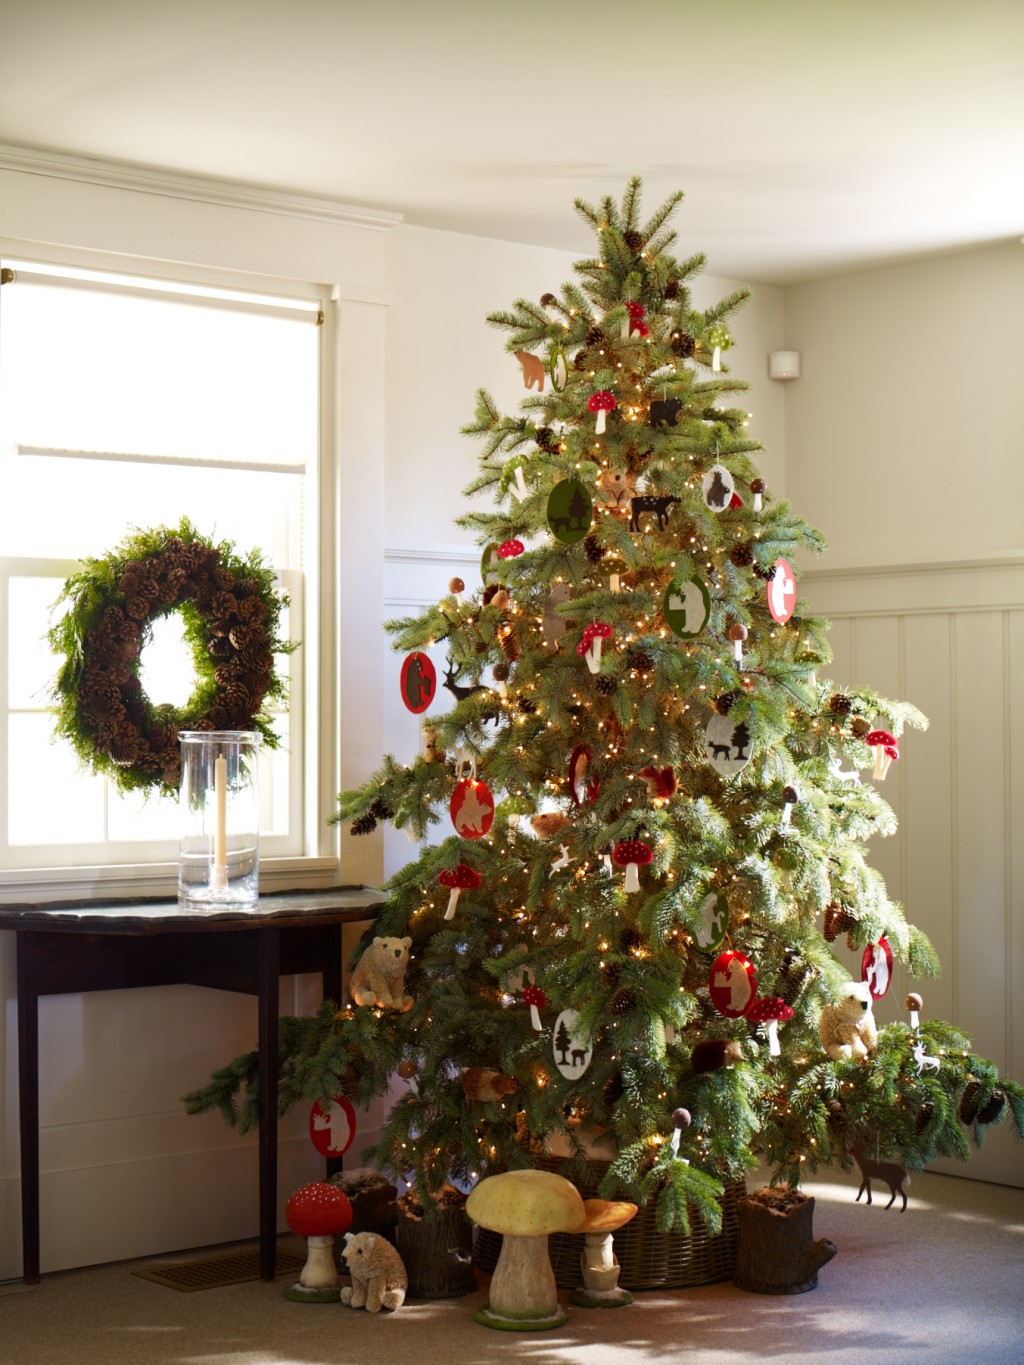 Rustic Christmas Ideas in Interior Design